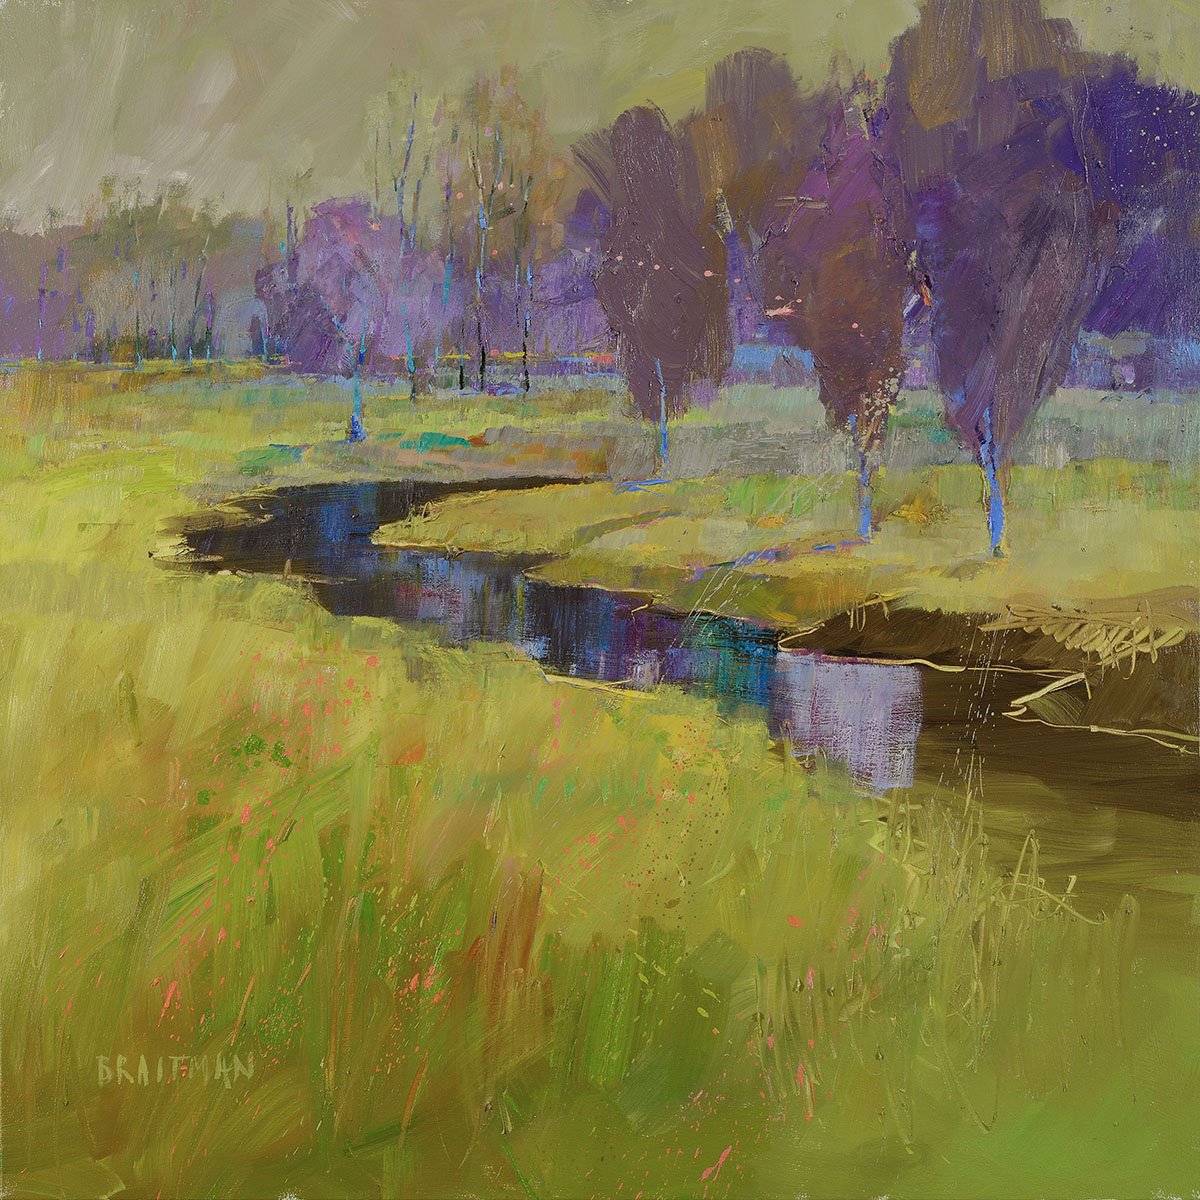 ' Wolf Creek ' oil painting by Andy Braitman
#oiloncanvas #surreallandscape